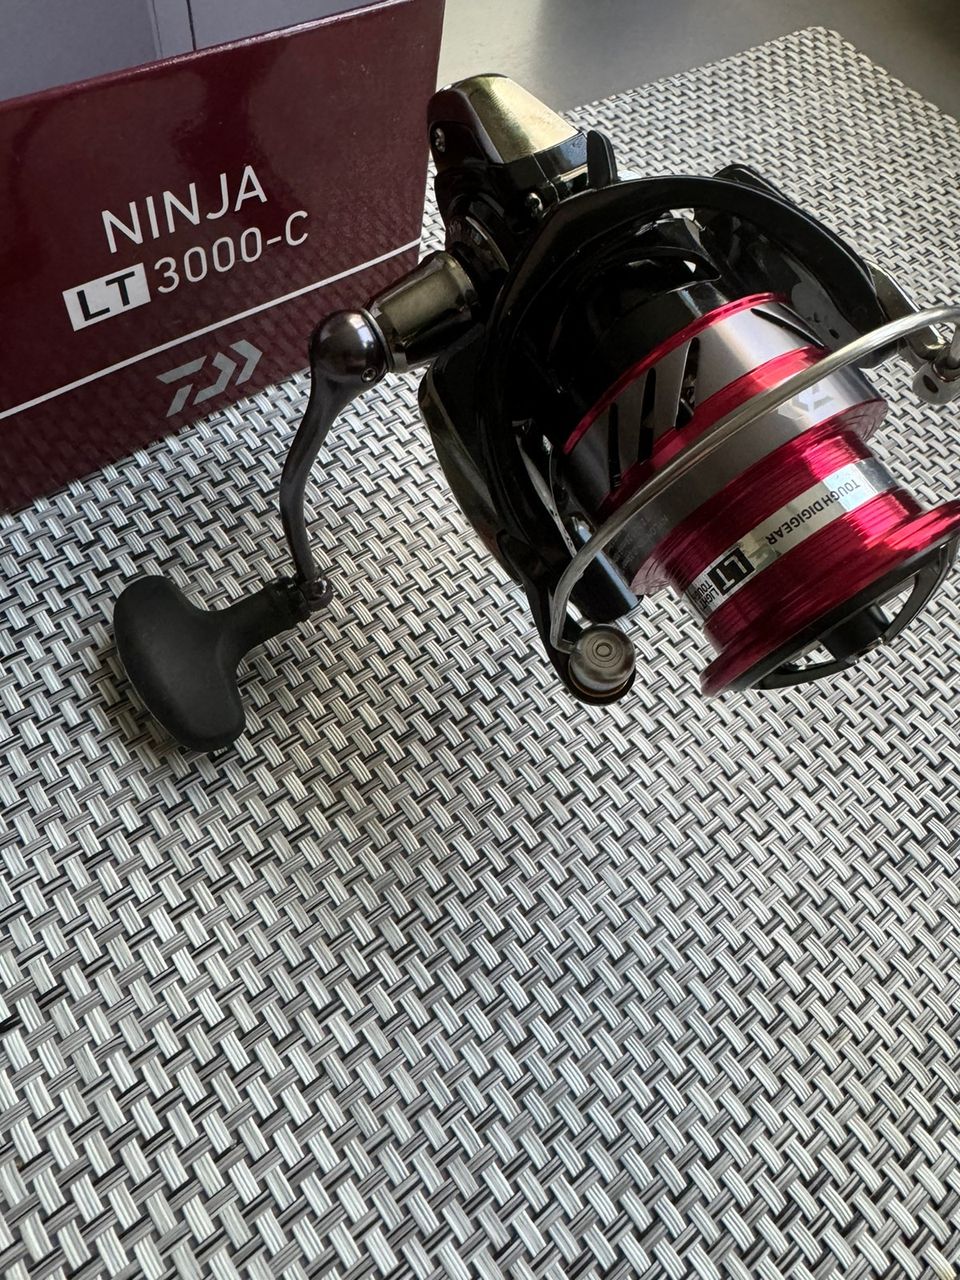 Daiwa Ninja LT3000-C avokela